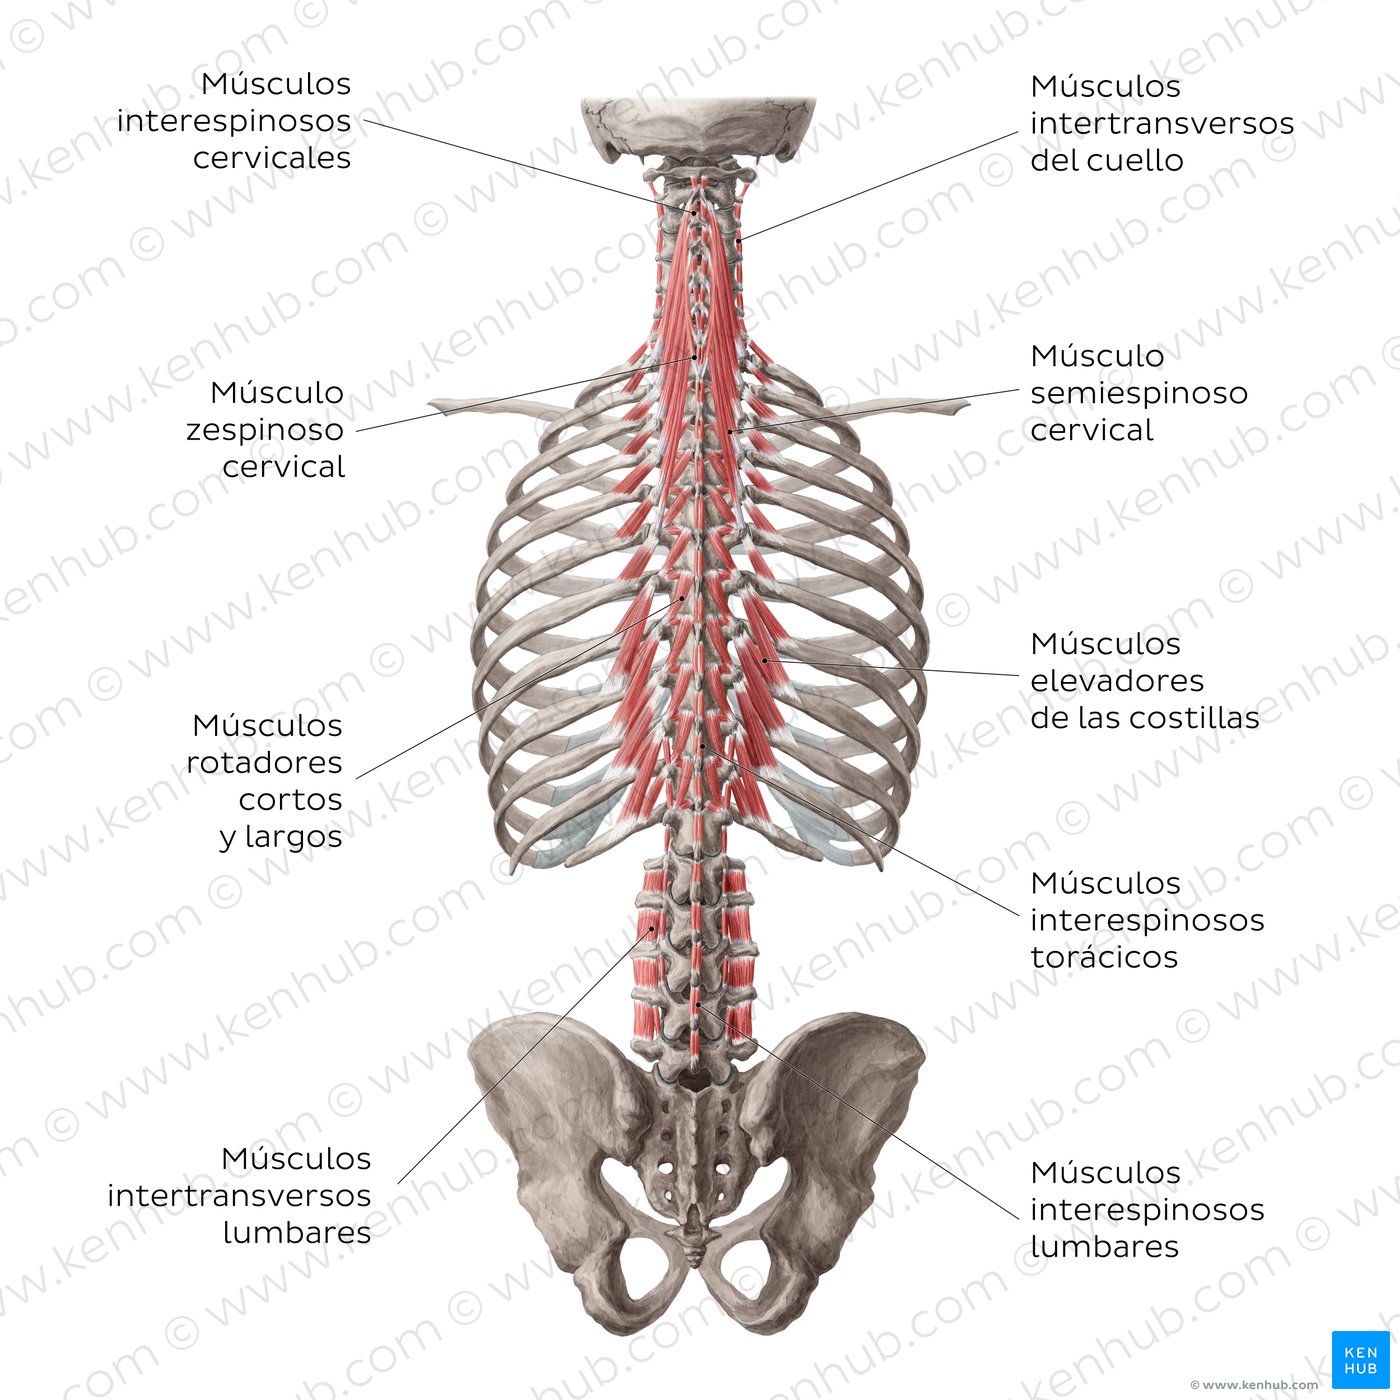 Músculos intrínsecos de la espalda: Capa profunda